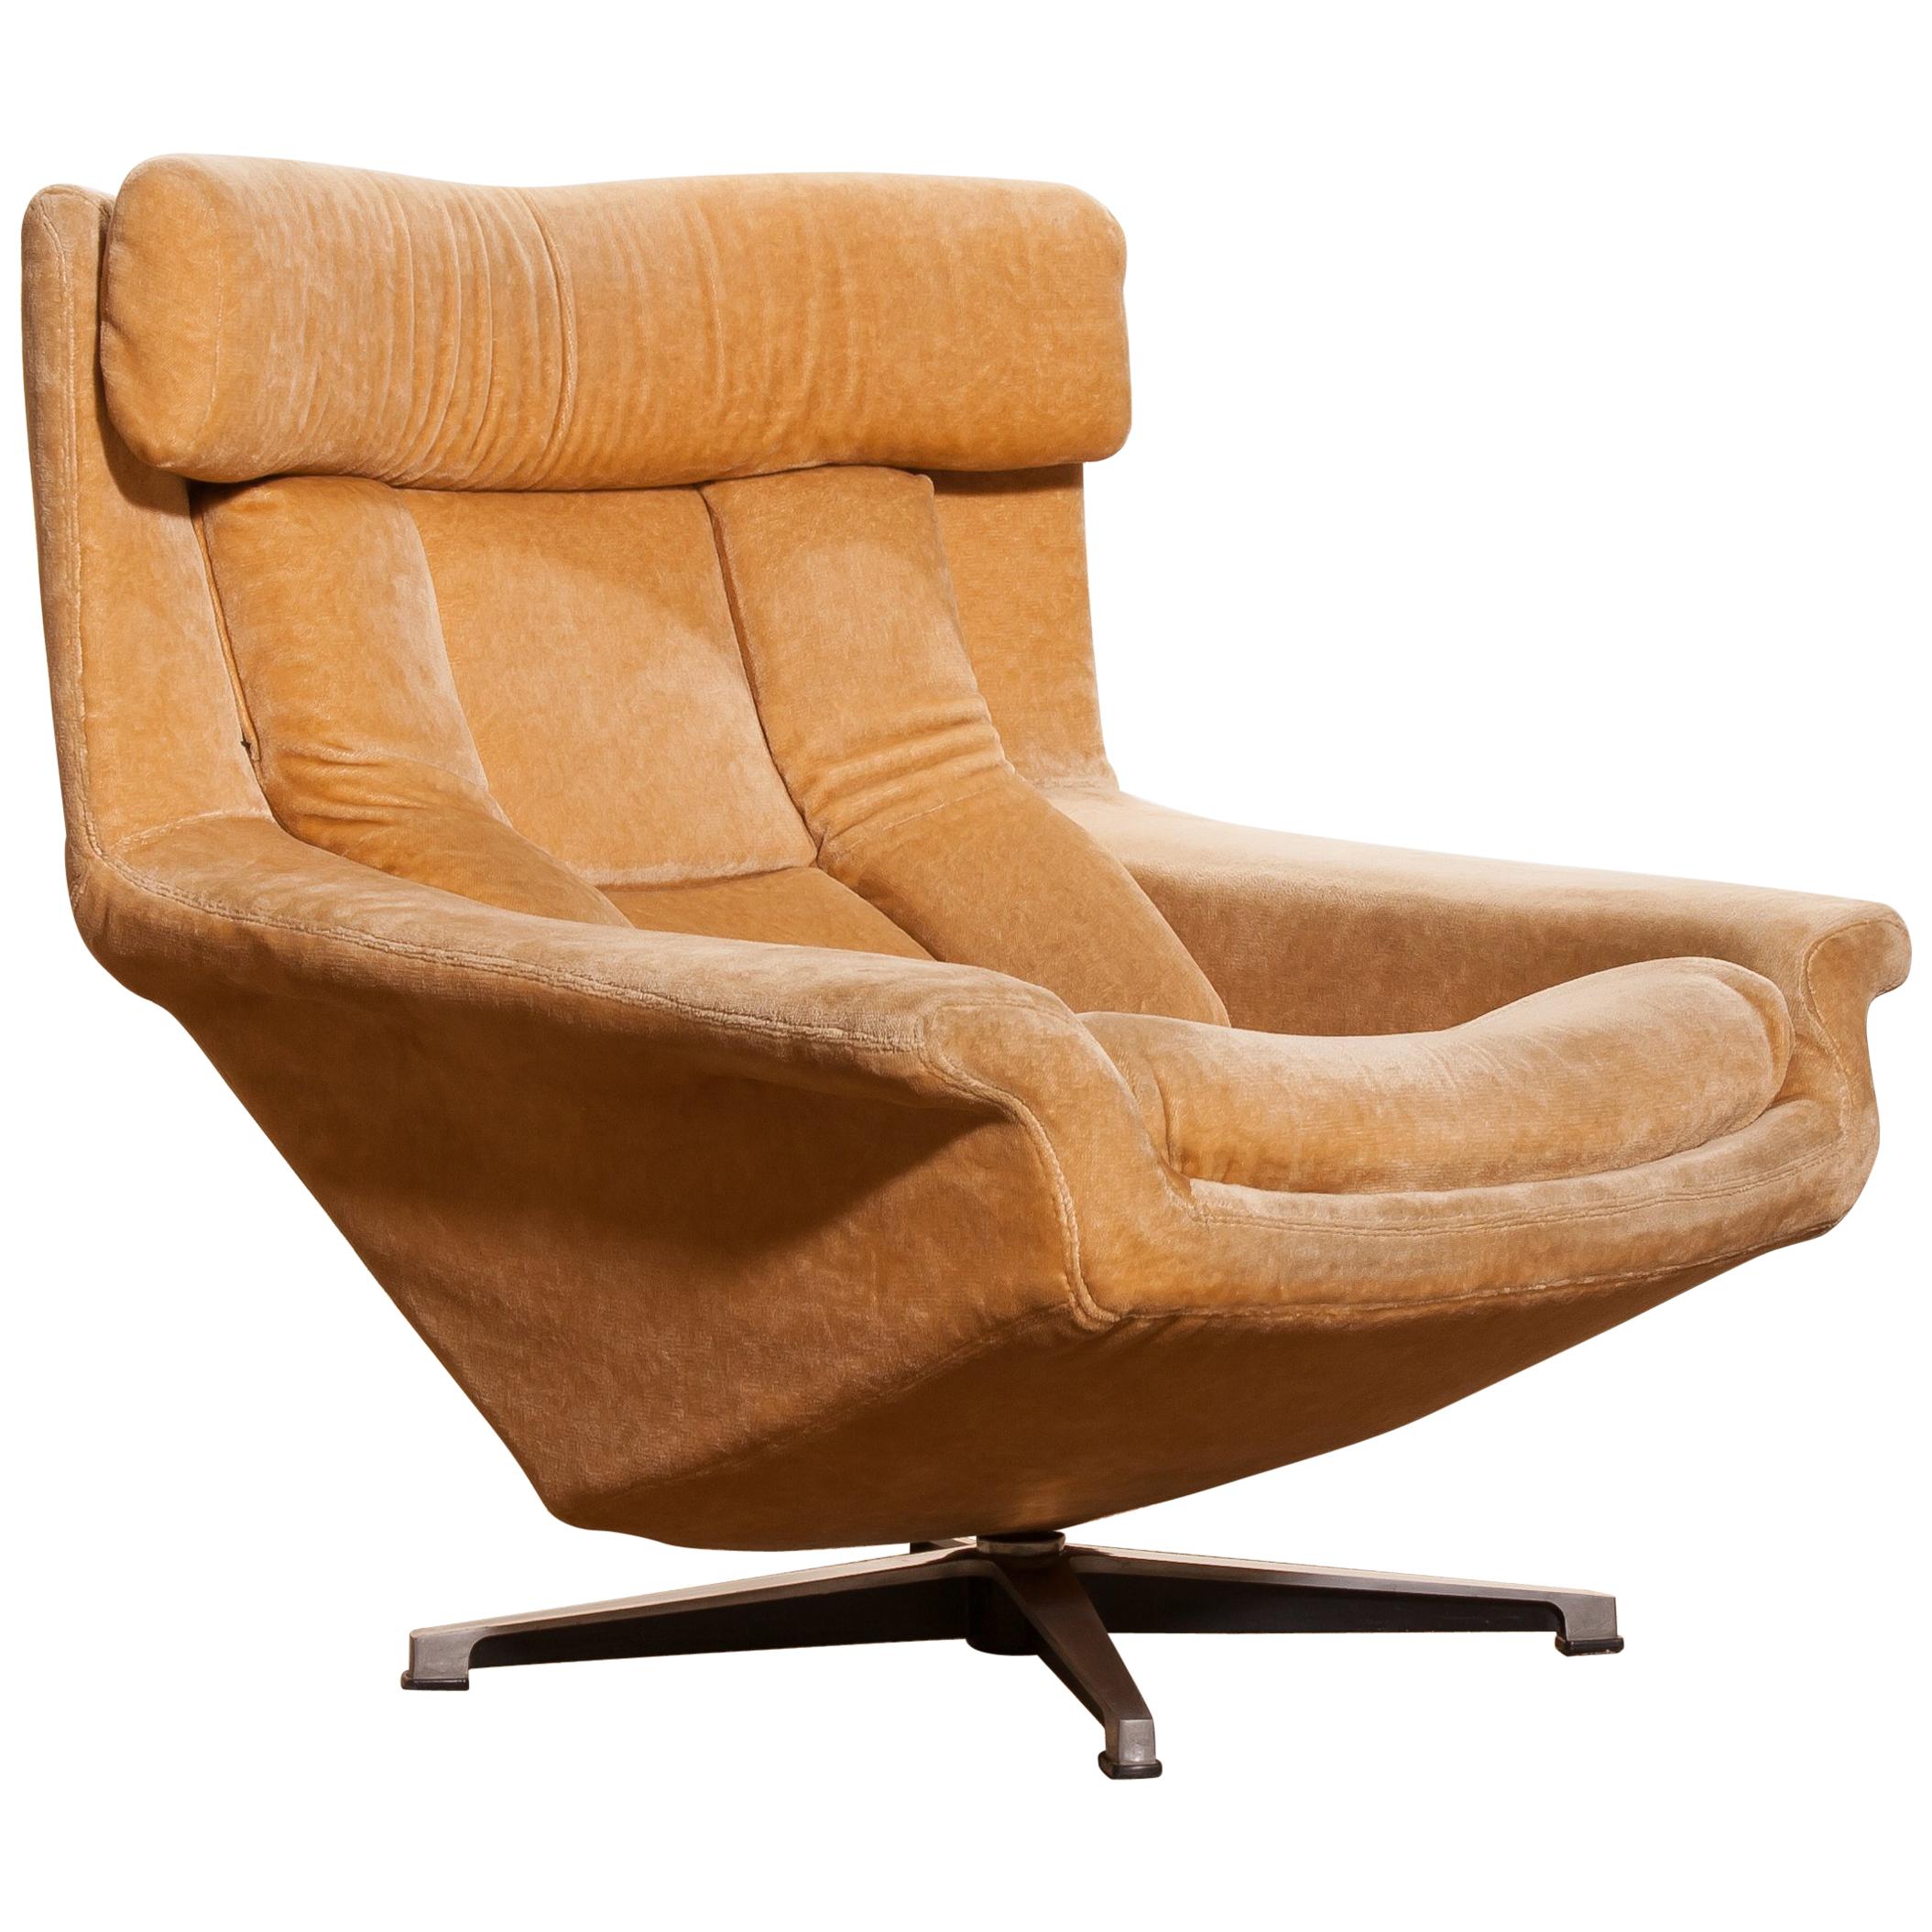 1960s, Velvet Swivel Lounge Chair 'Bamse' by Bra Bohag AB Sweden